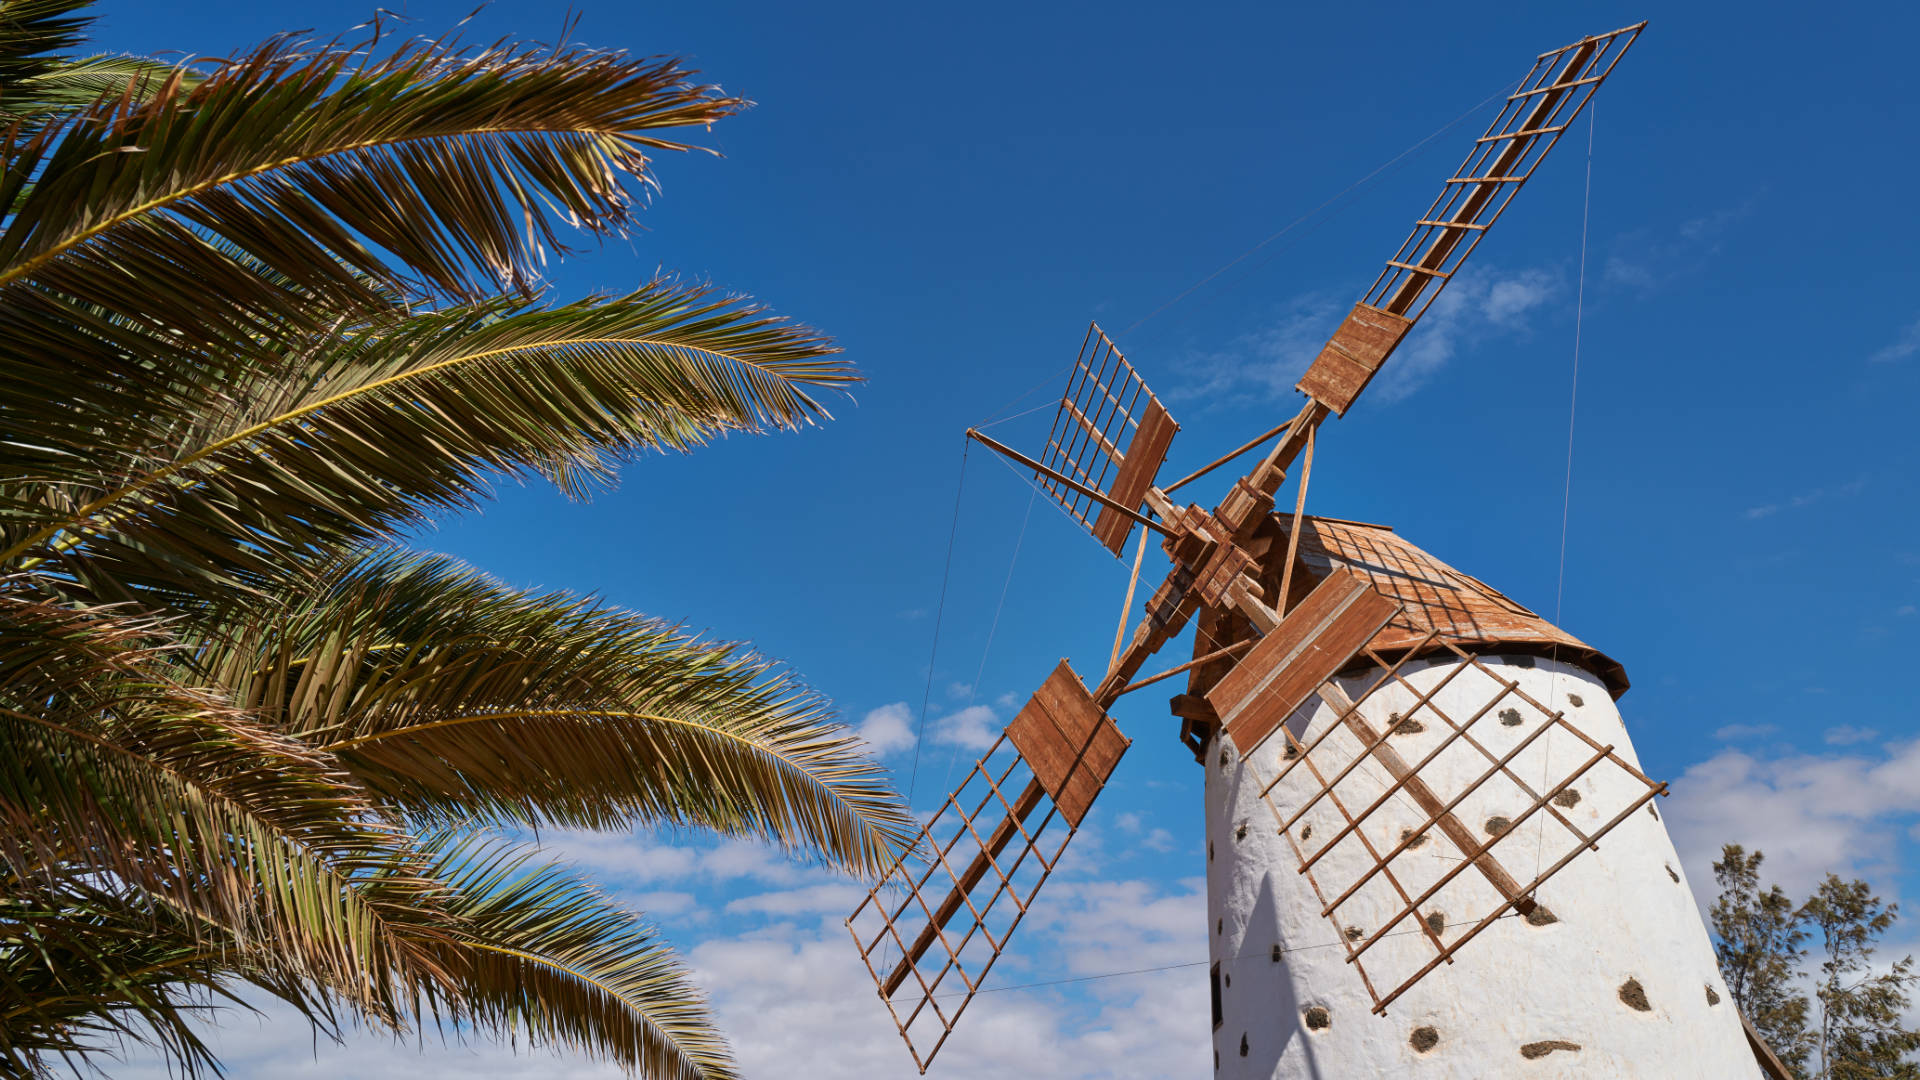 Die Windmühle von El Roque auf Fuerteventura.